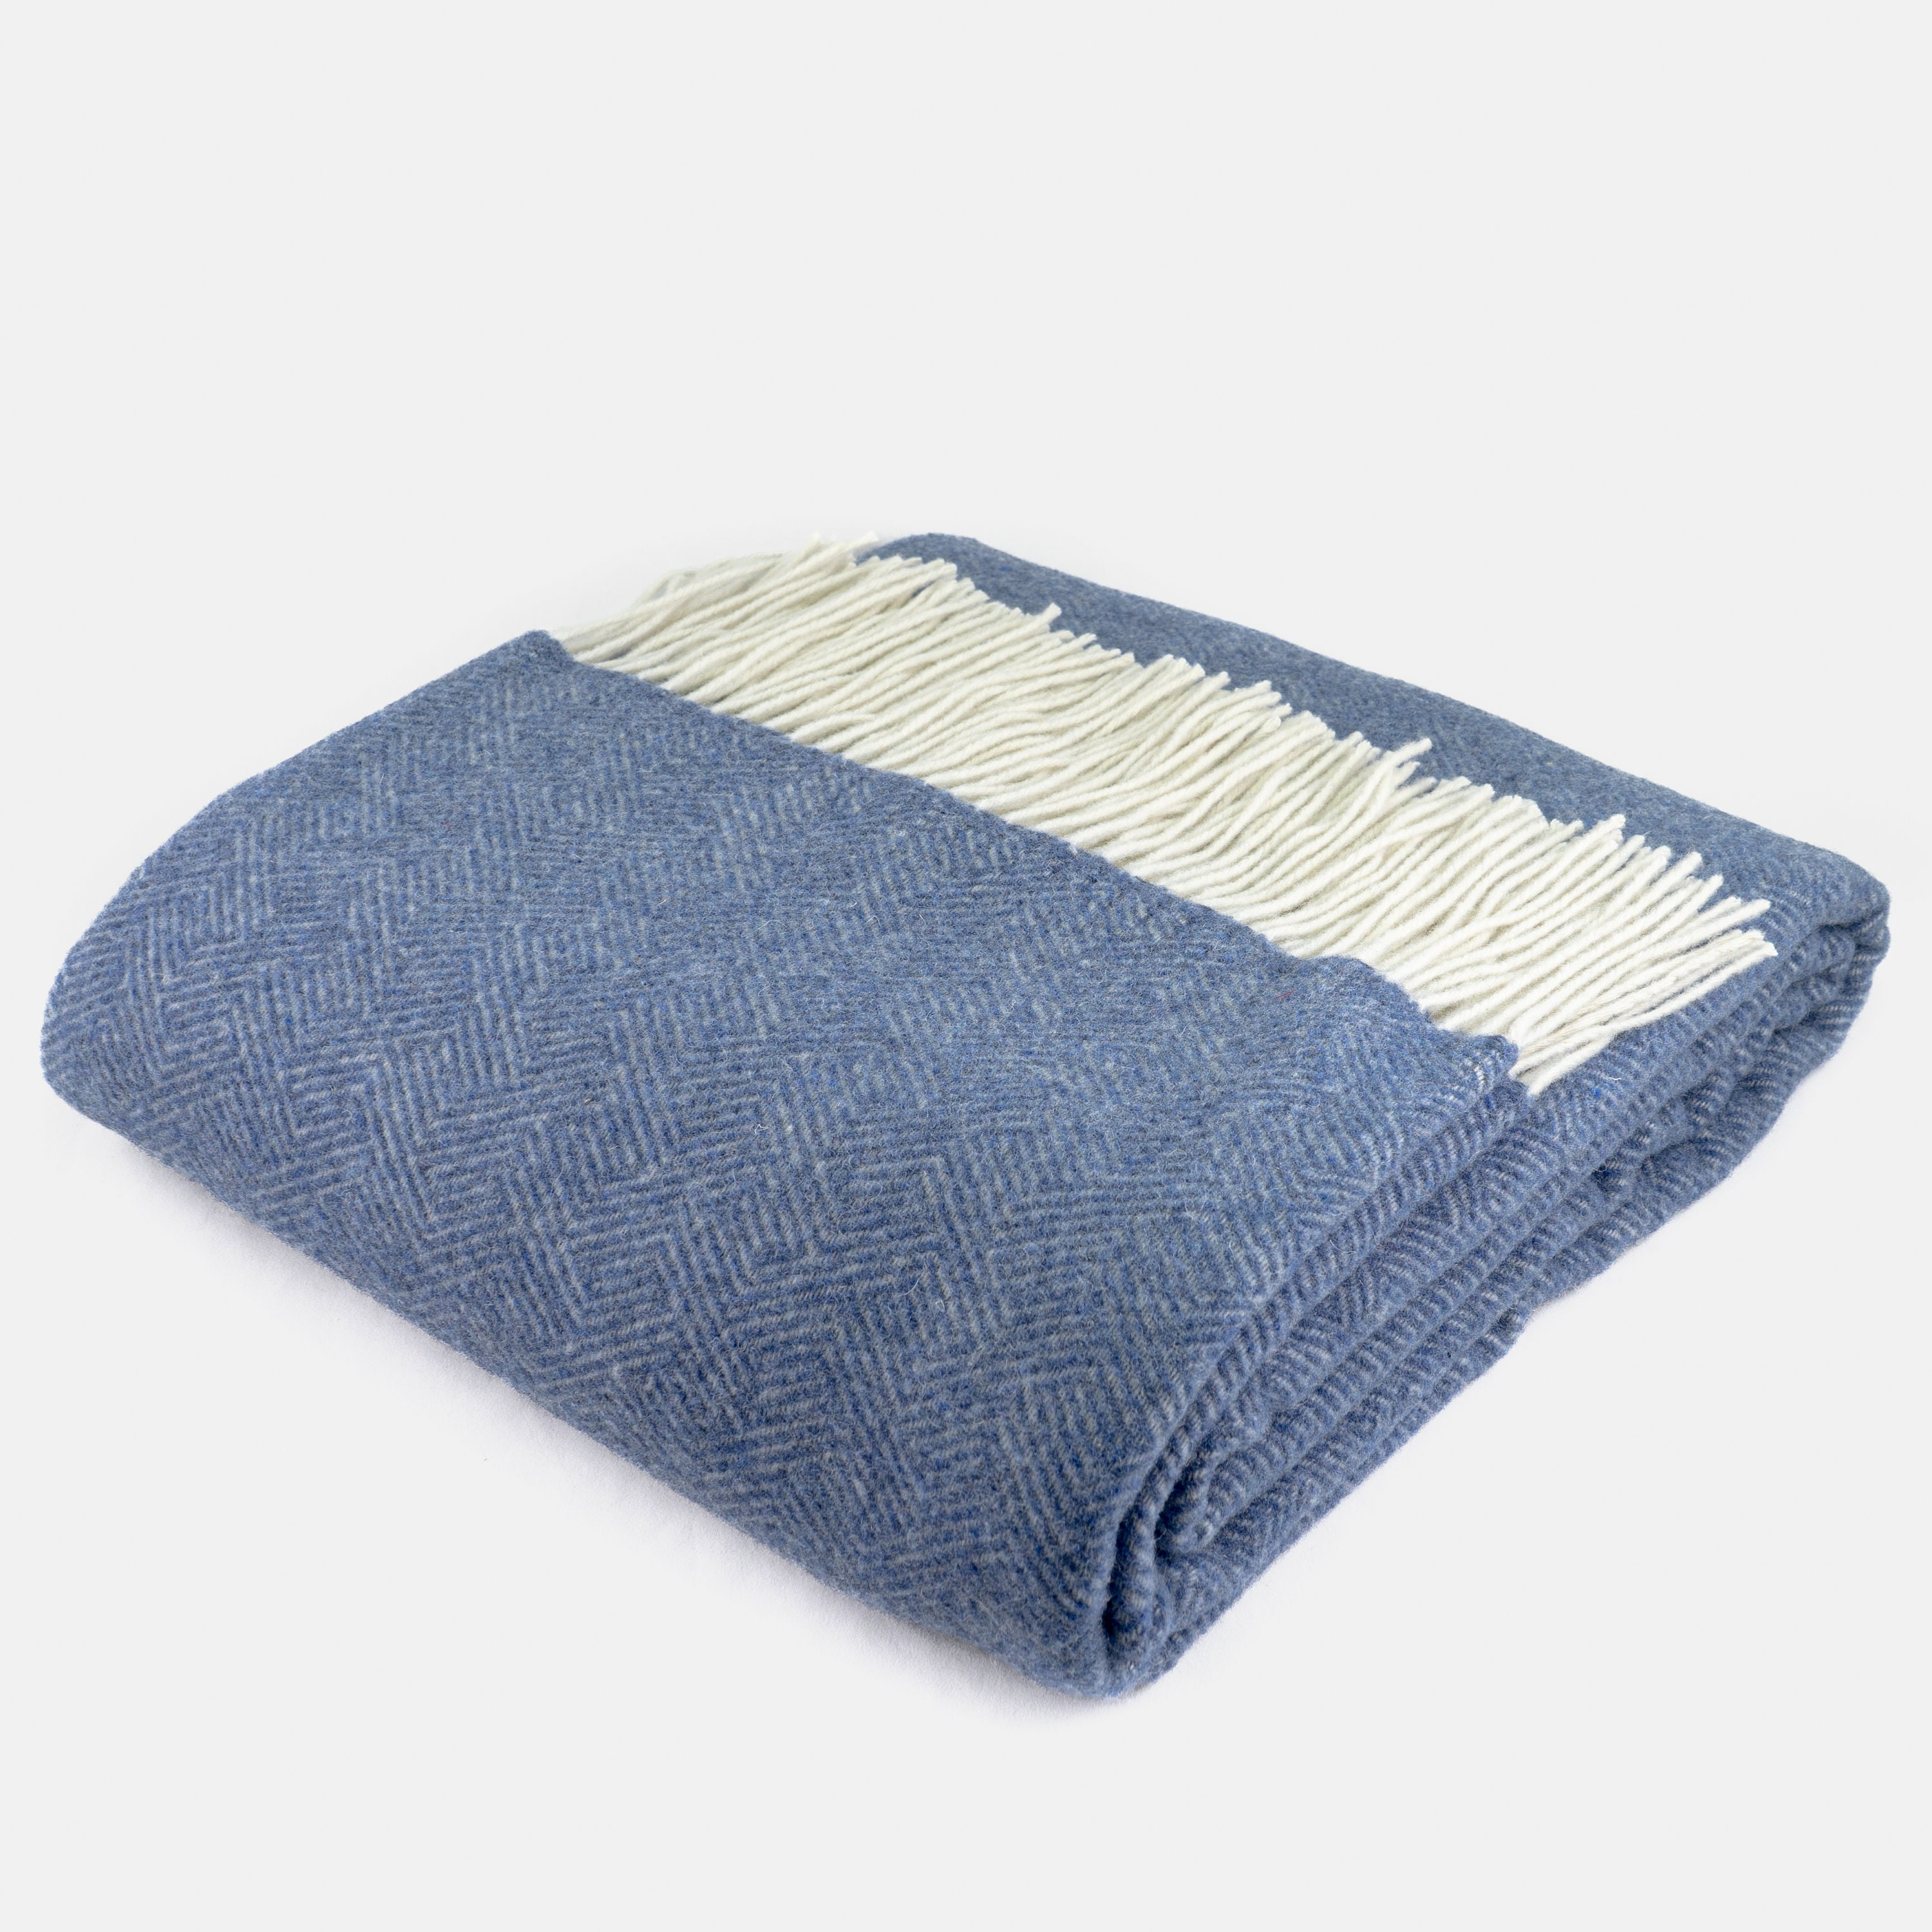 couverture en cachemire et mérinos de qualité supérieure bleu. couverture luxe laine cachemire. jeté canapé haute qualité. lit douce